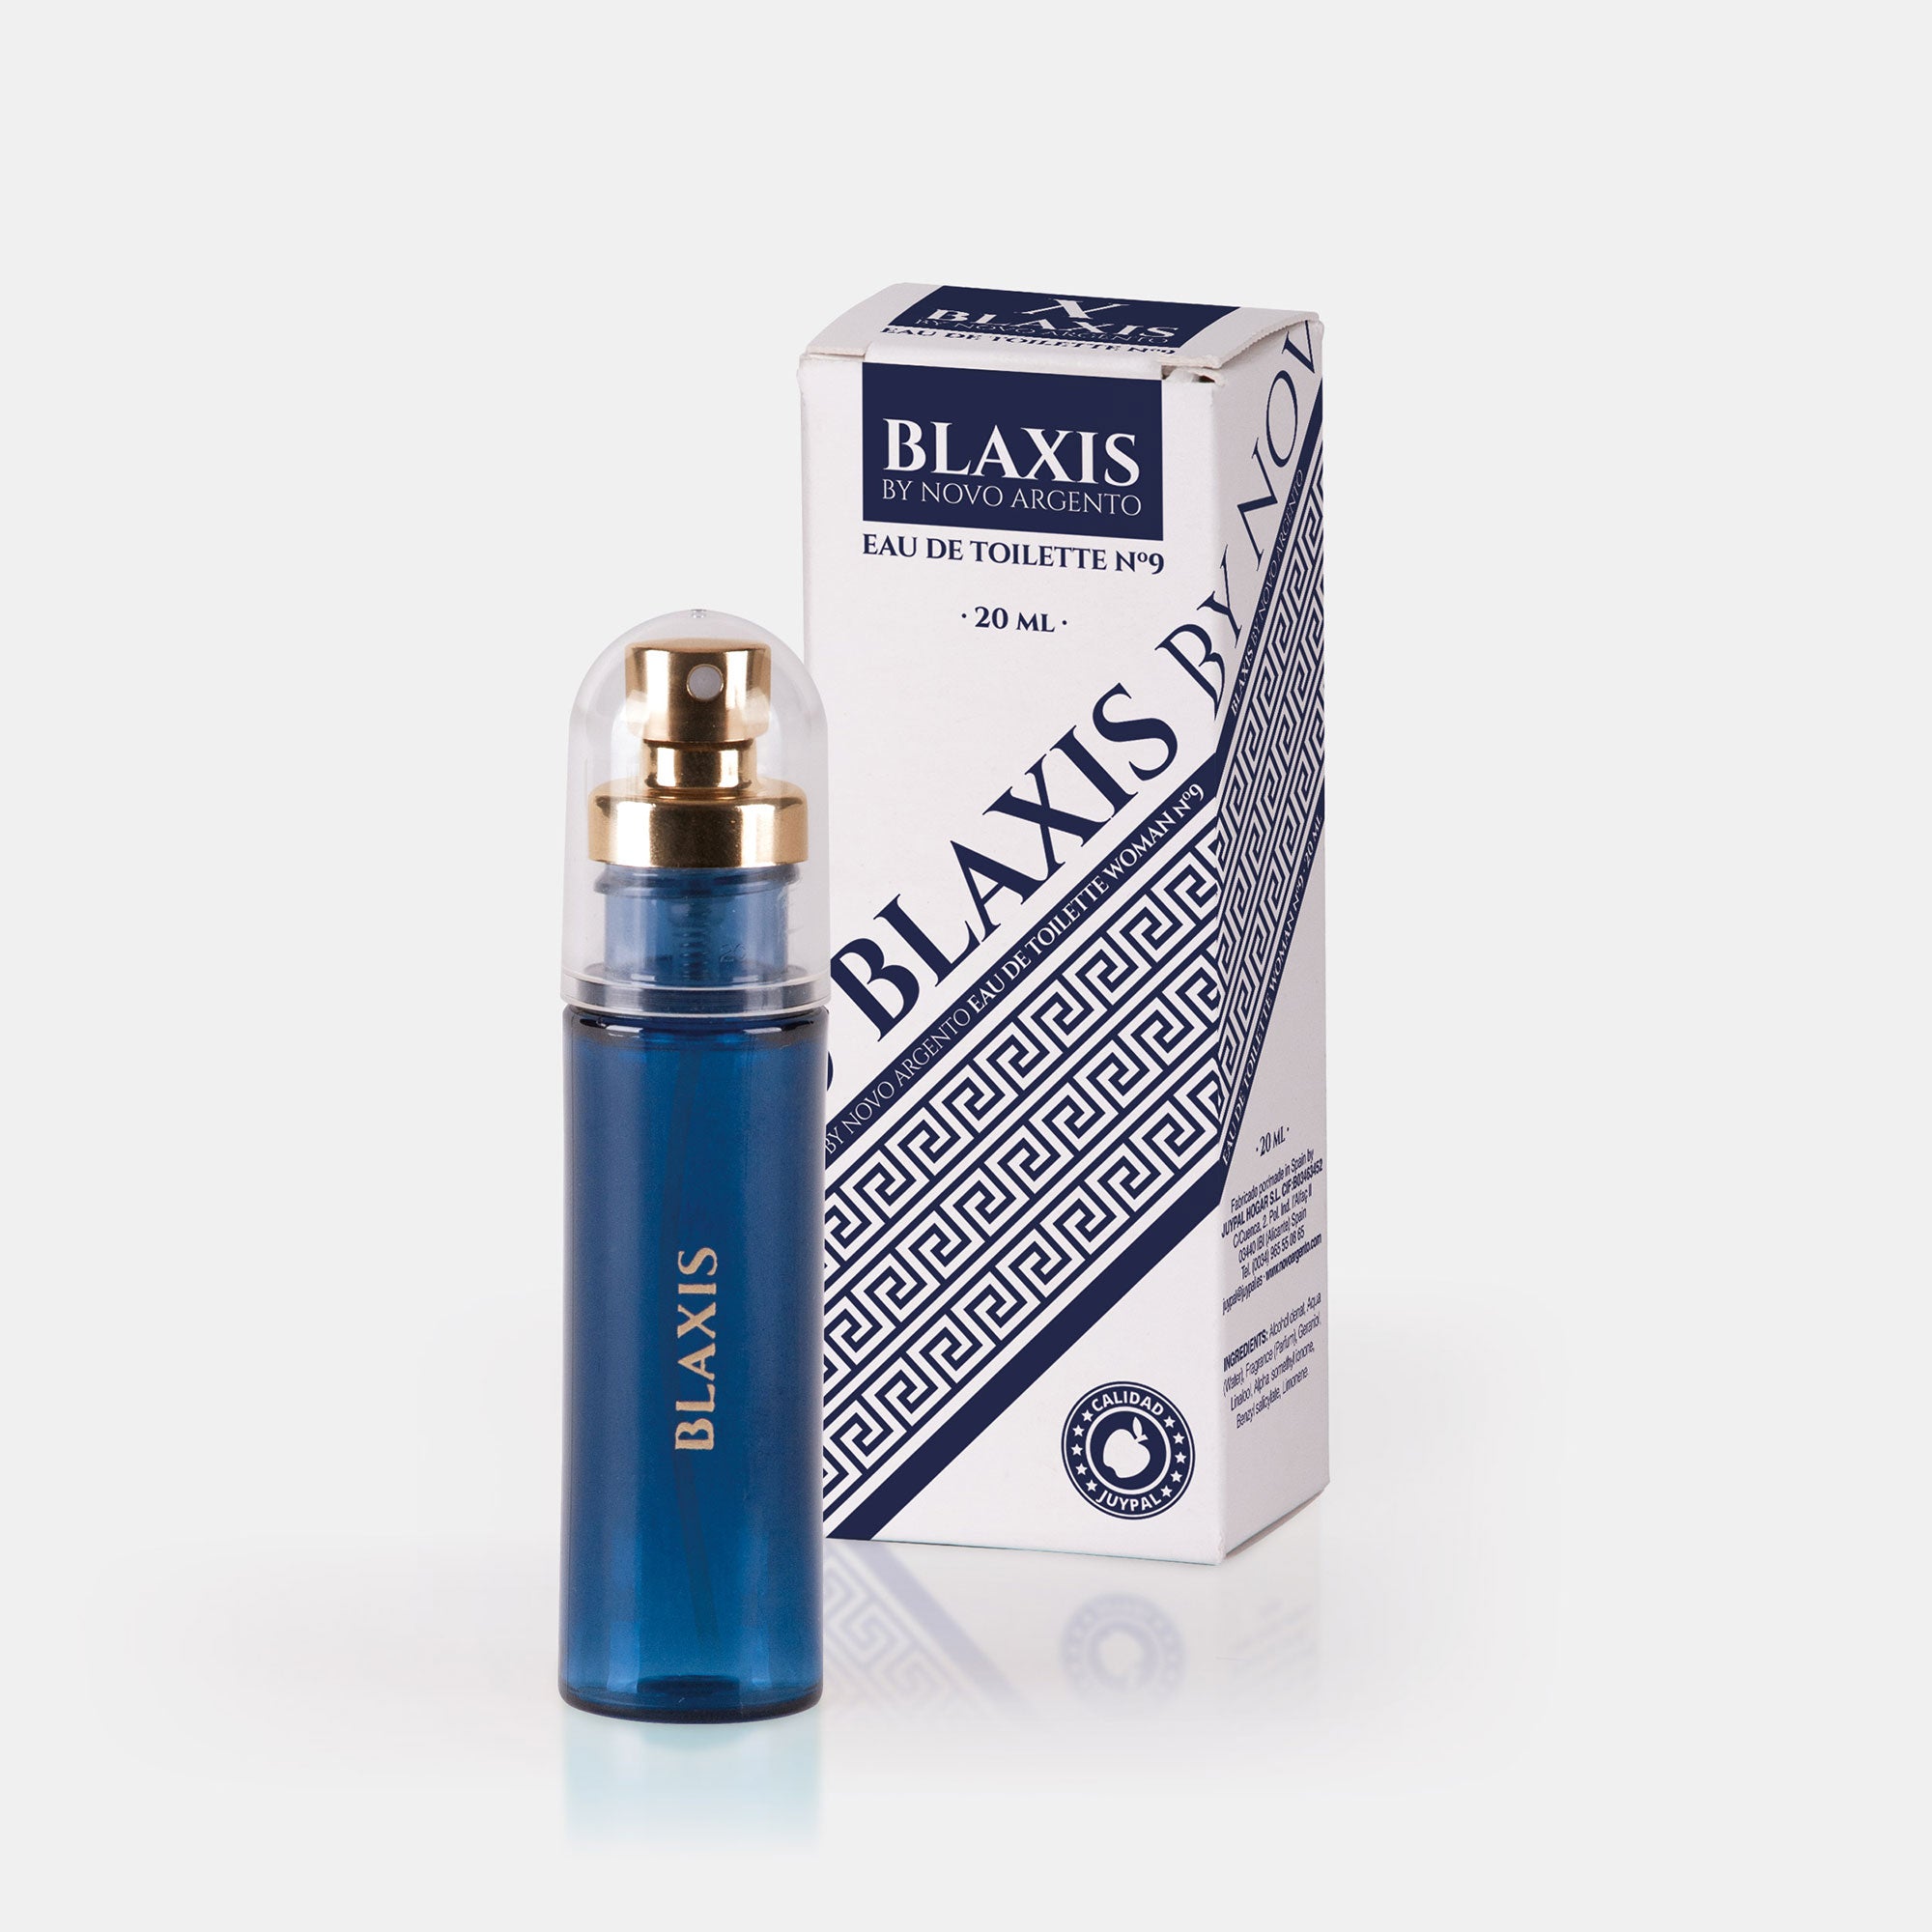 BLAXIS-20.jpg